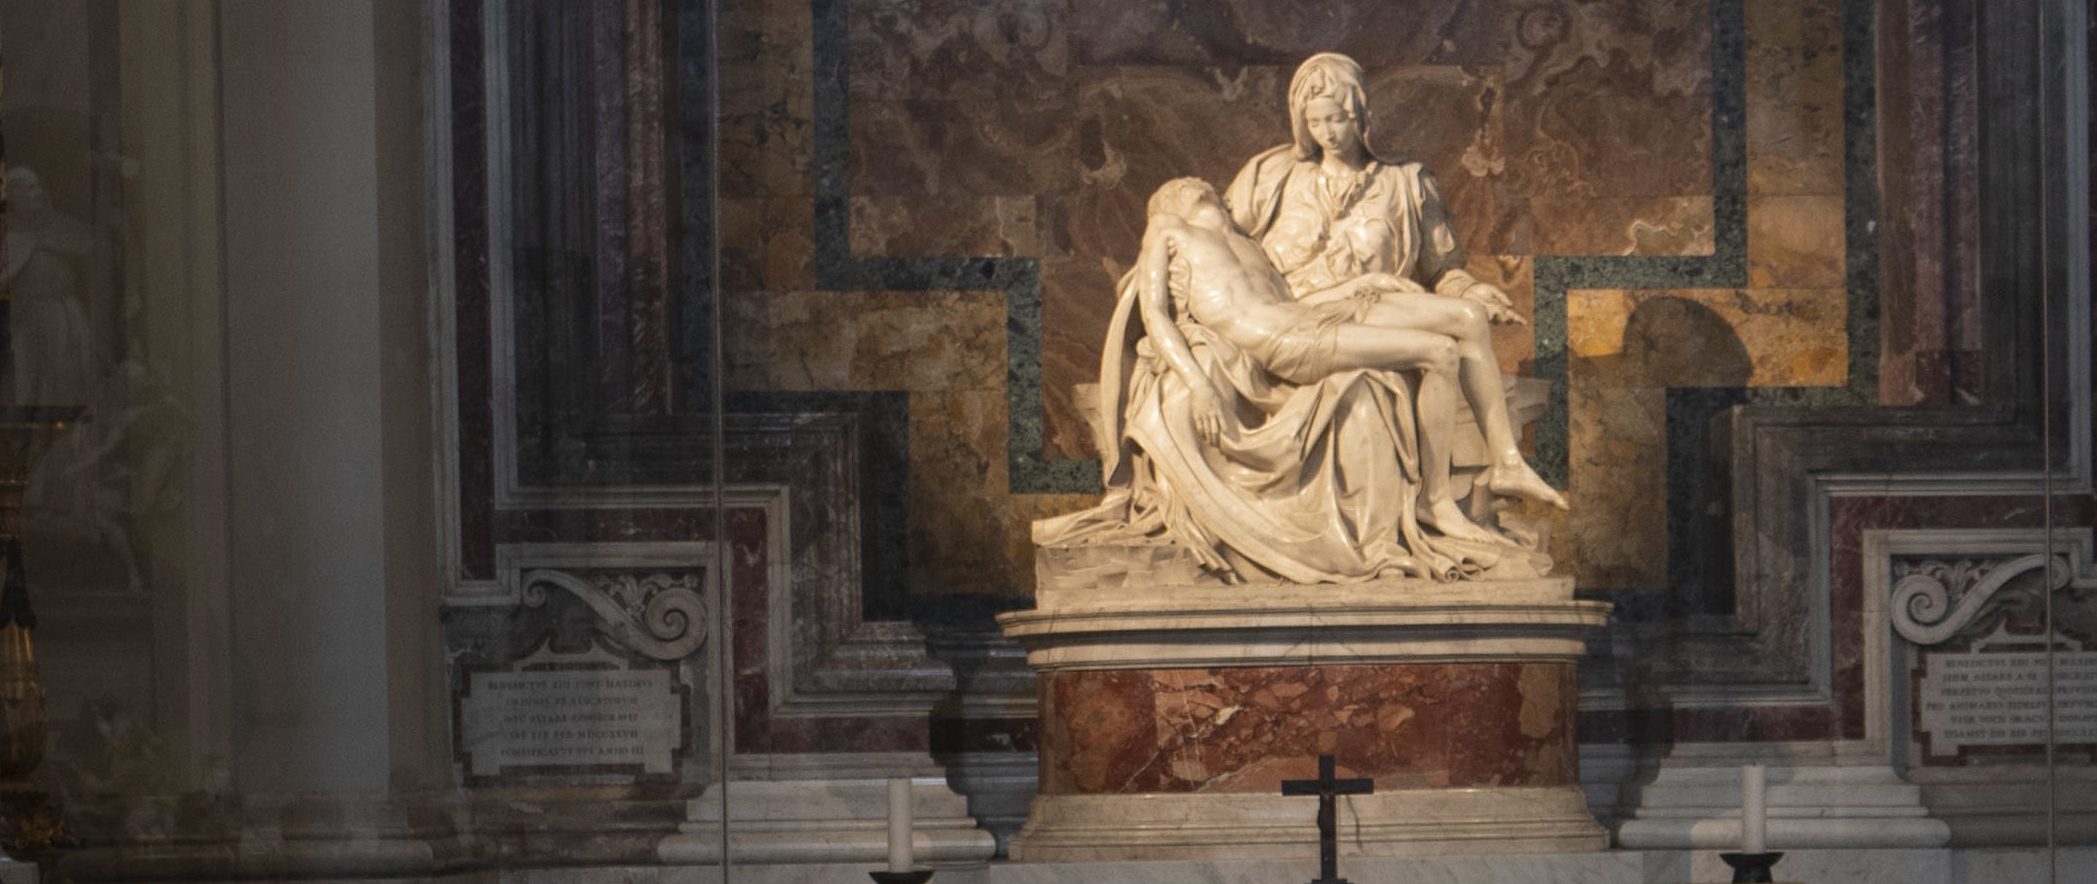 La "Piedad" de Miguel Ángel en la Basílica de San Pedro. A lo largo de los años, la virgen María ha inspirado a grandes artistas.  (Foto Prensa Libre: EFE)